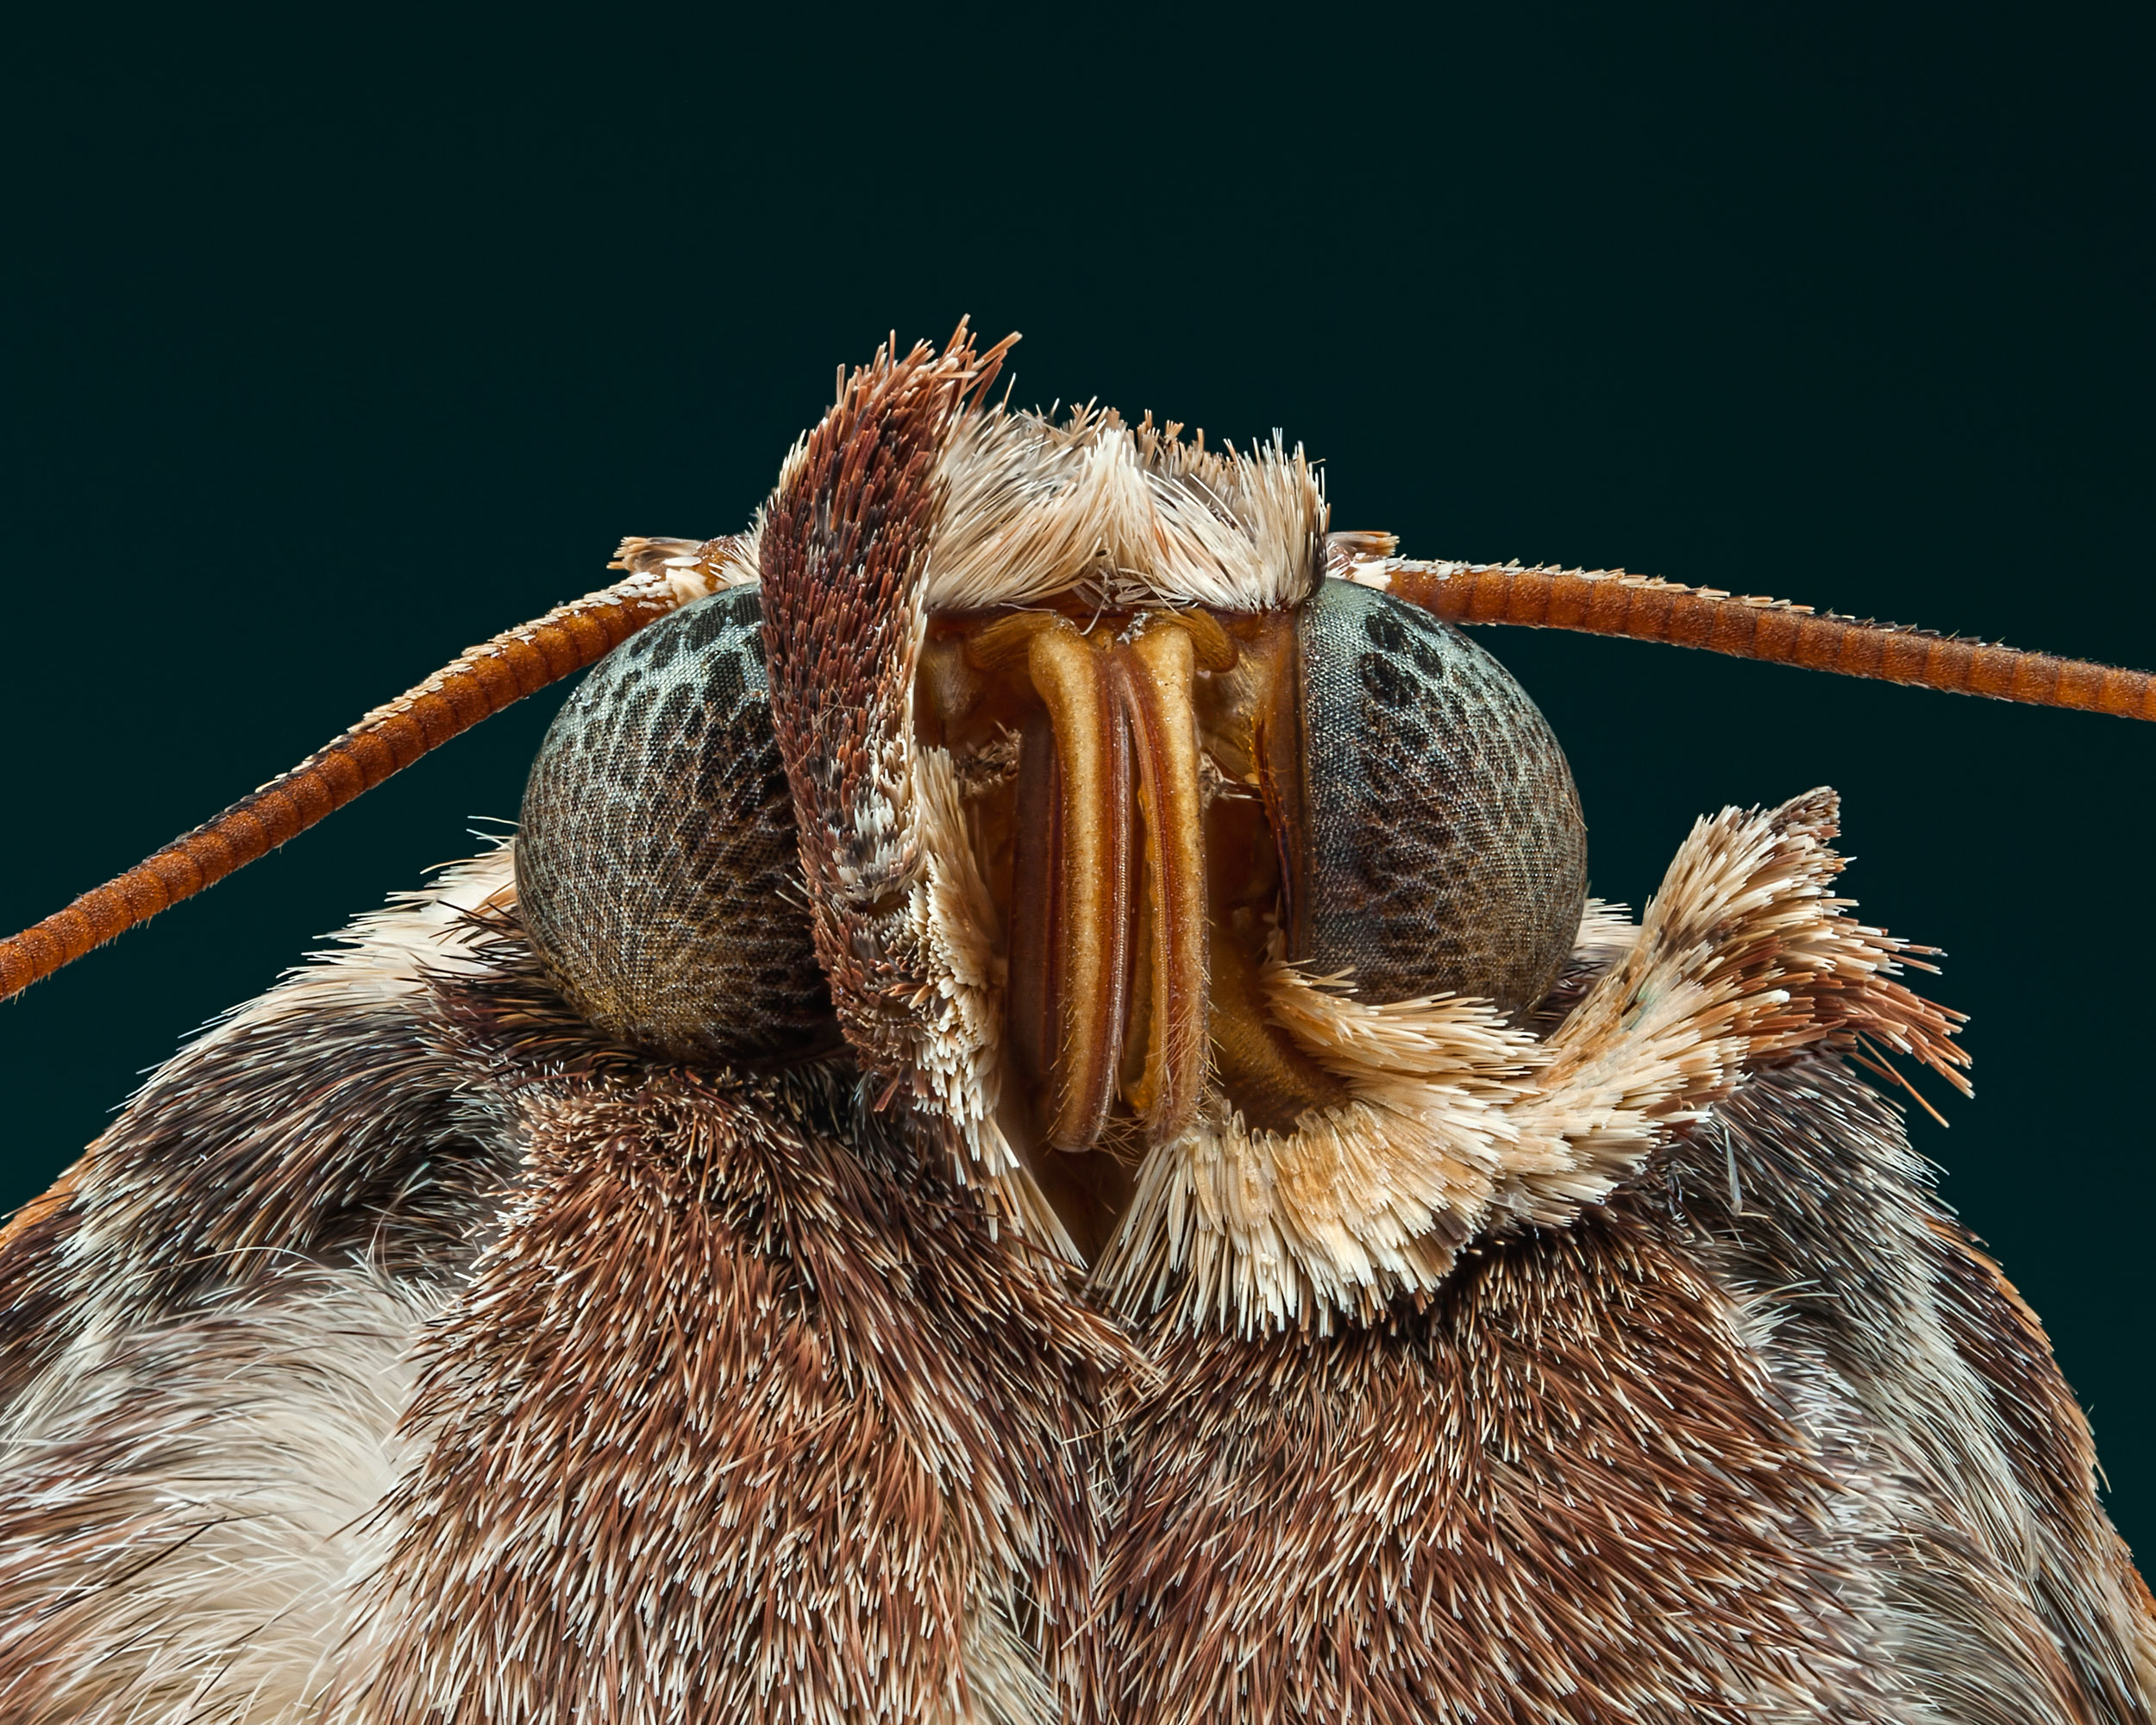 Unknown moth species